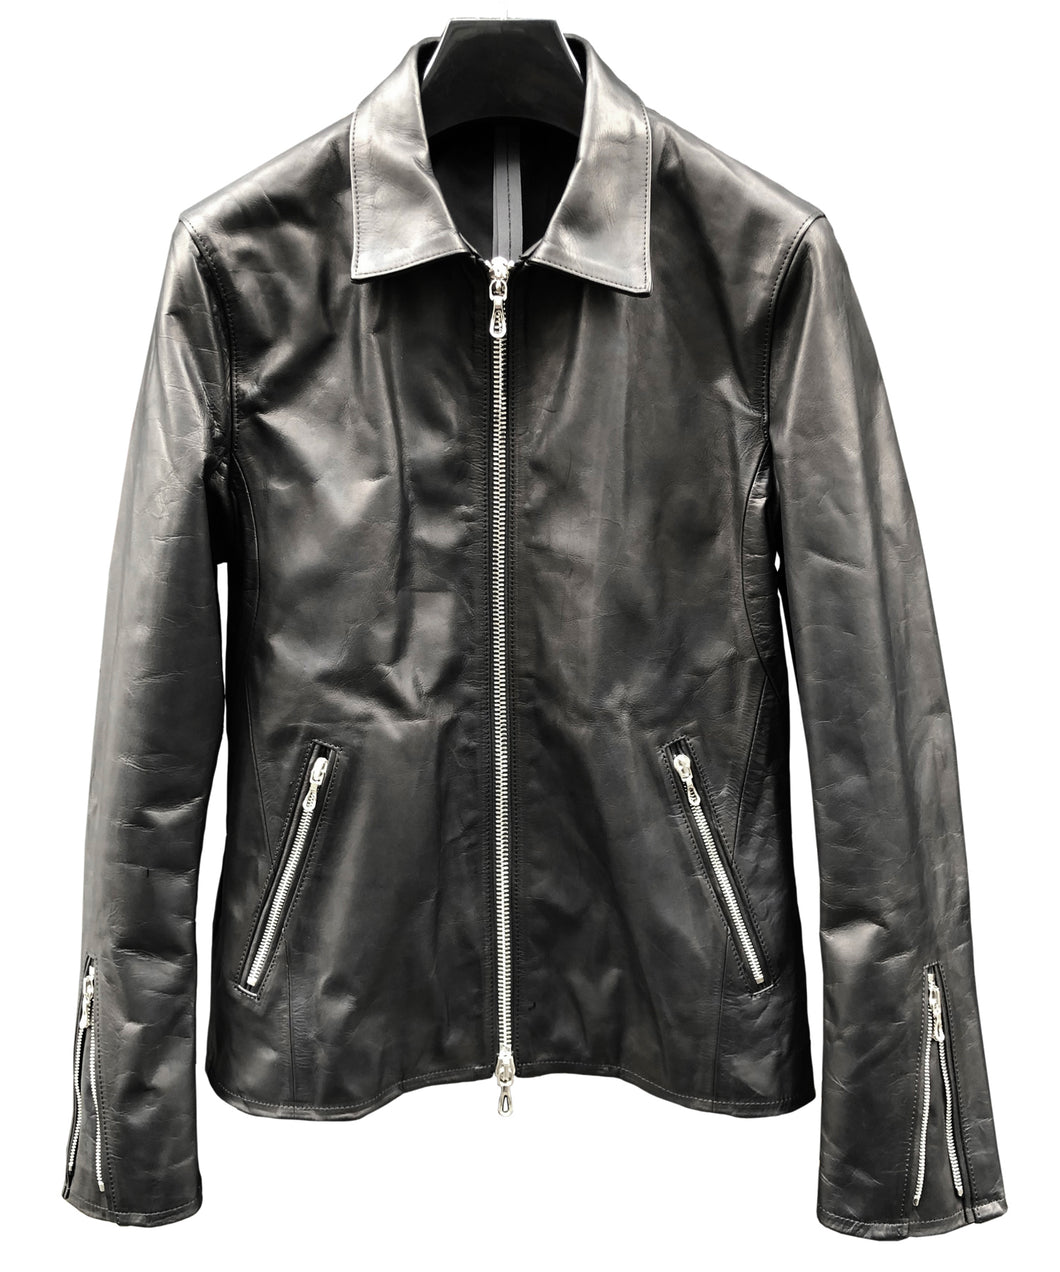 の着想源500 Miglia wax jacket\n「ミル ジャケット」の着想源